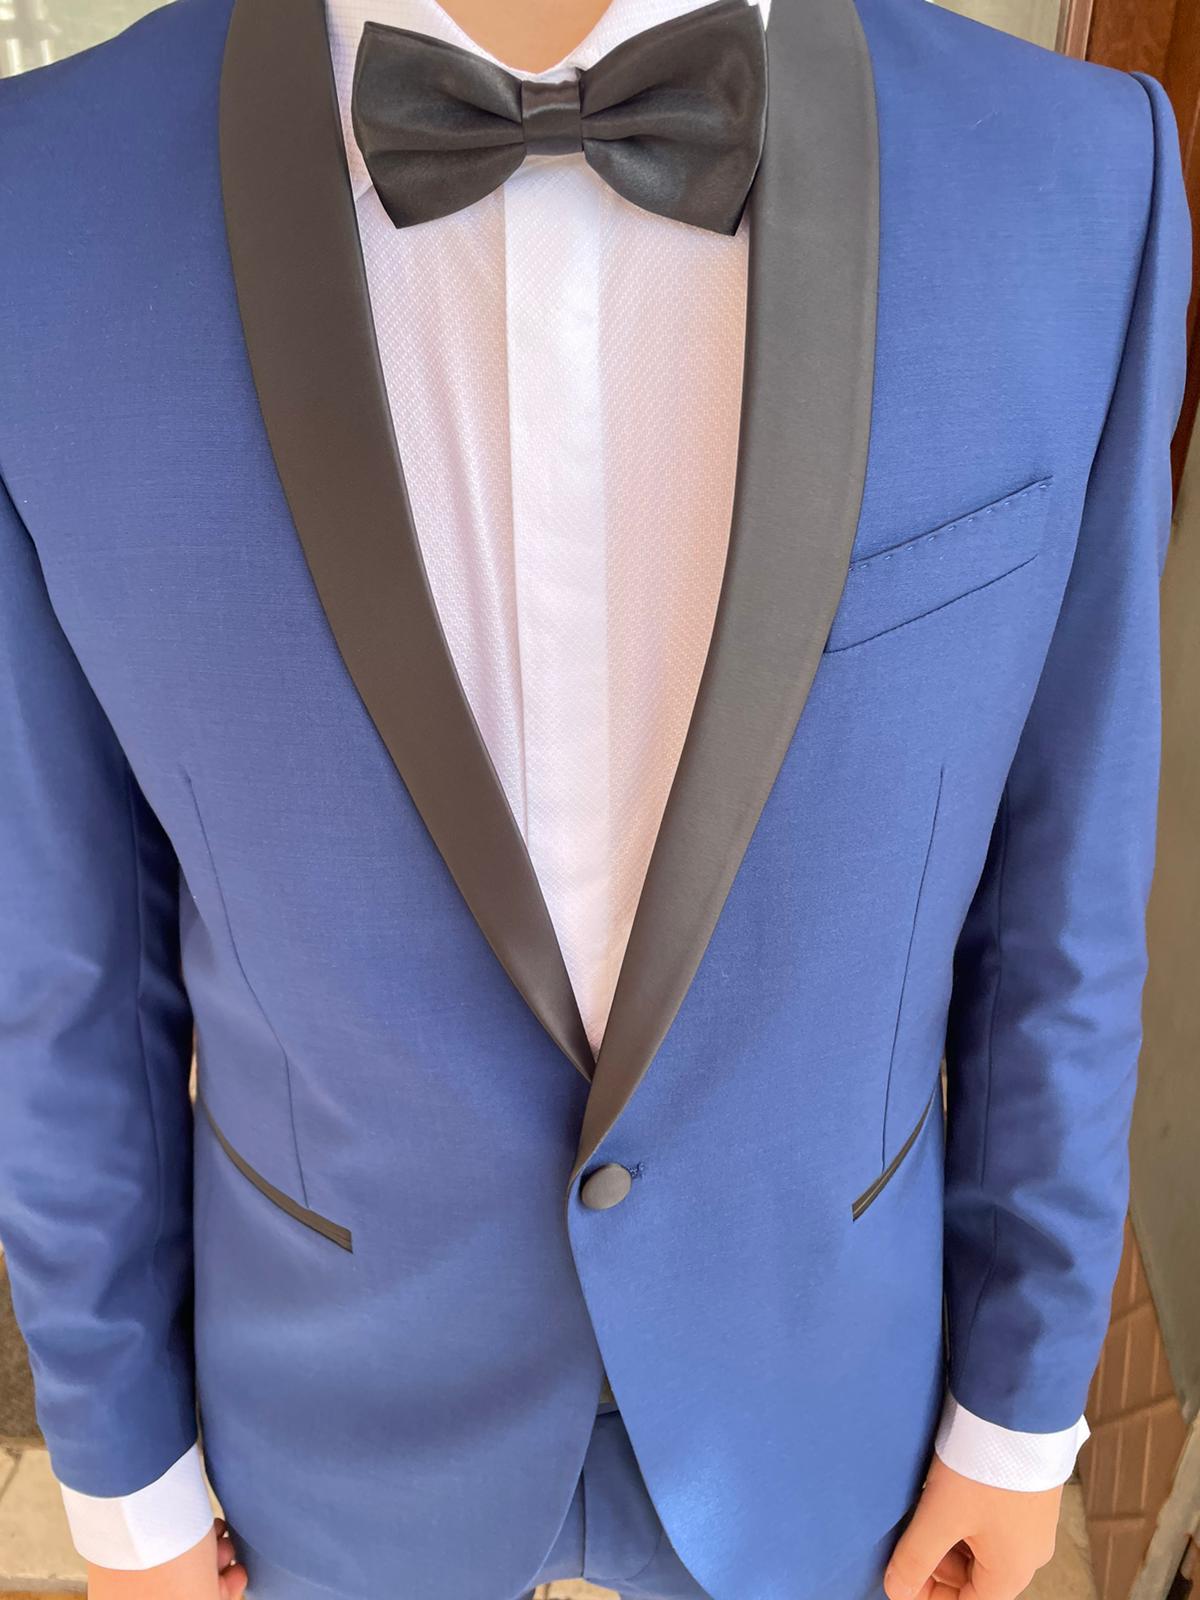 BOCELLI S 17 men's tuxedo suit